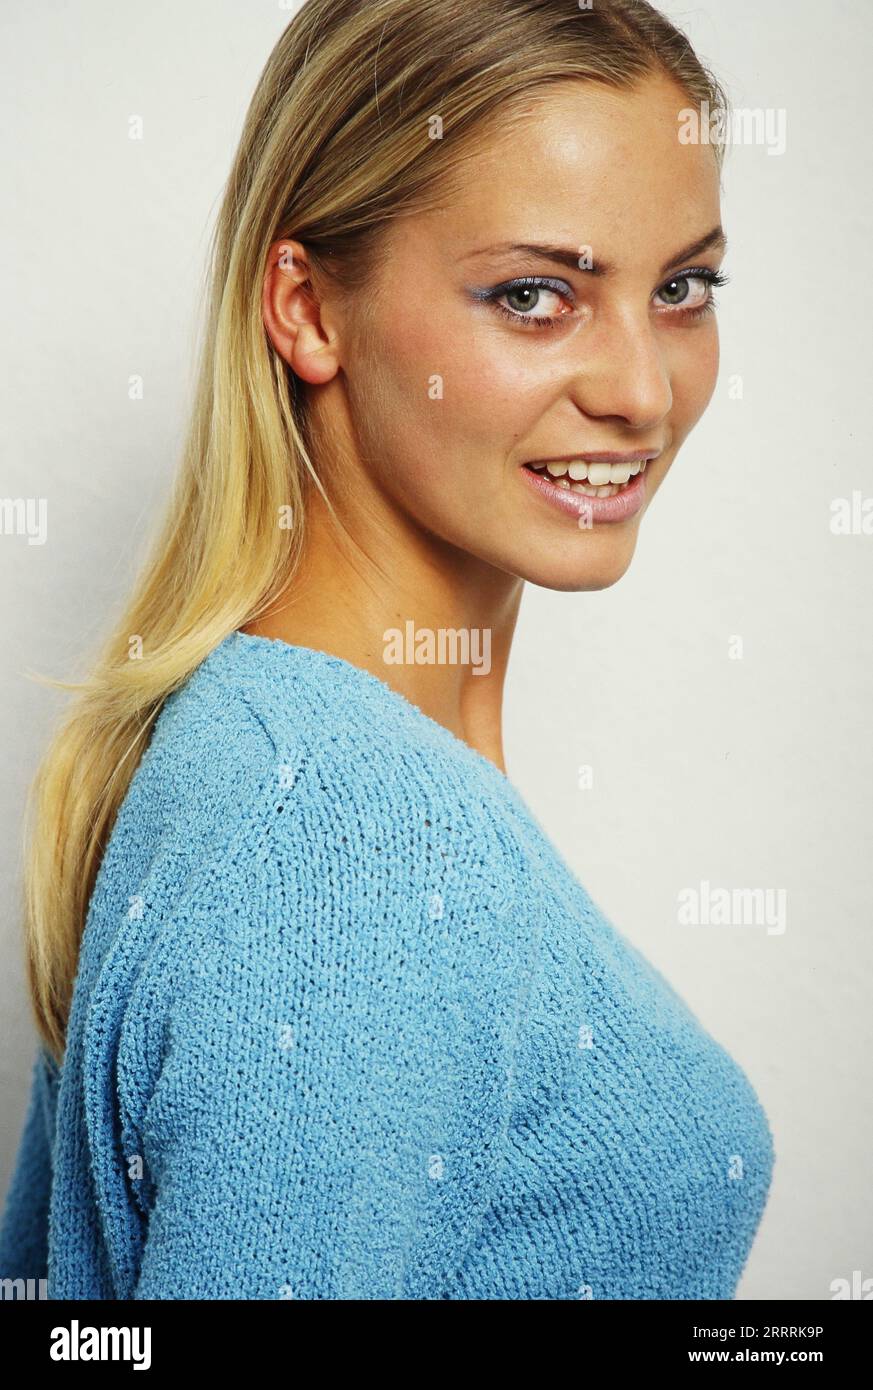 Annika Murjahn, deutsche Schauspielerin, in einem hellblauen Pullover bei einem Promo-Fotoshoot für die ARD Soap 'Marienhof' im Fotostudio, Deutschland 1997. Stock Photo